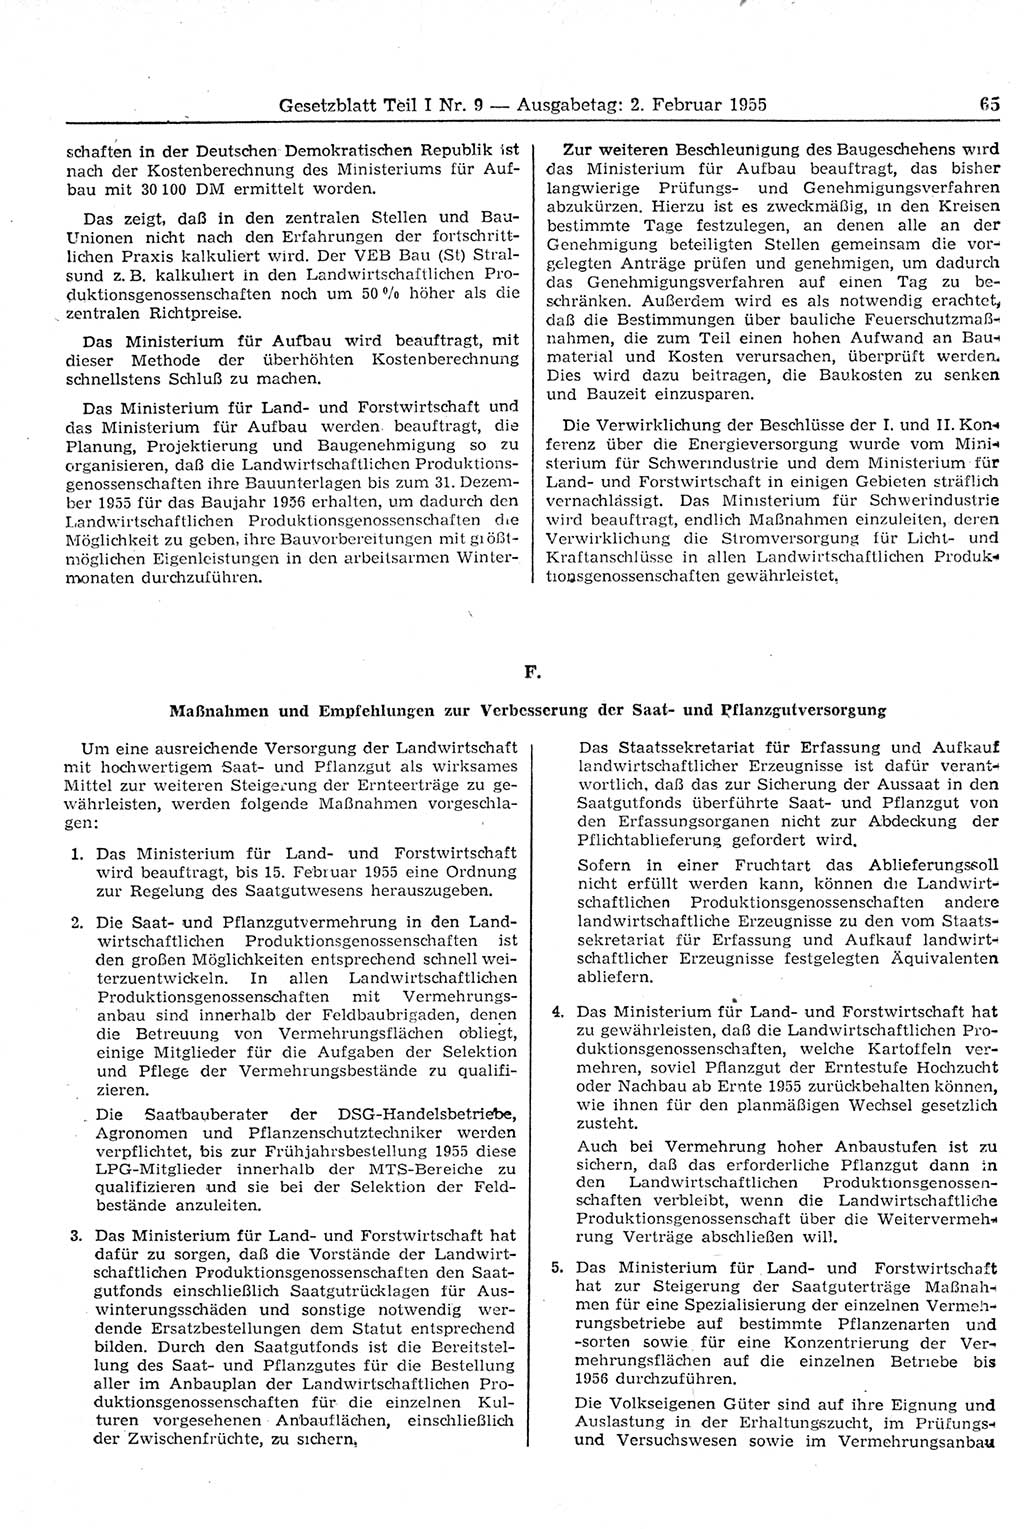 Gesetzblatt (GBl.) der Deutschen Demokratischen Republik (DDR) Teil Ⅰ 1955, Seite 65 (GBl. DDR Ⅰ 1955, S. 65)